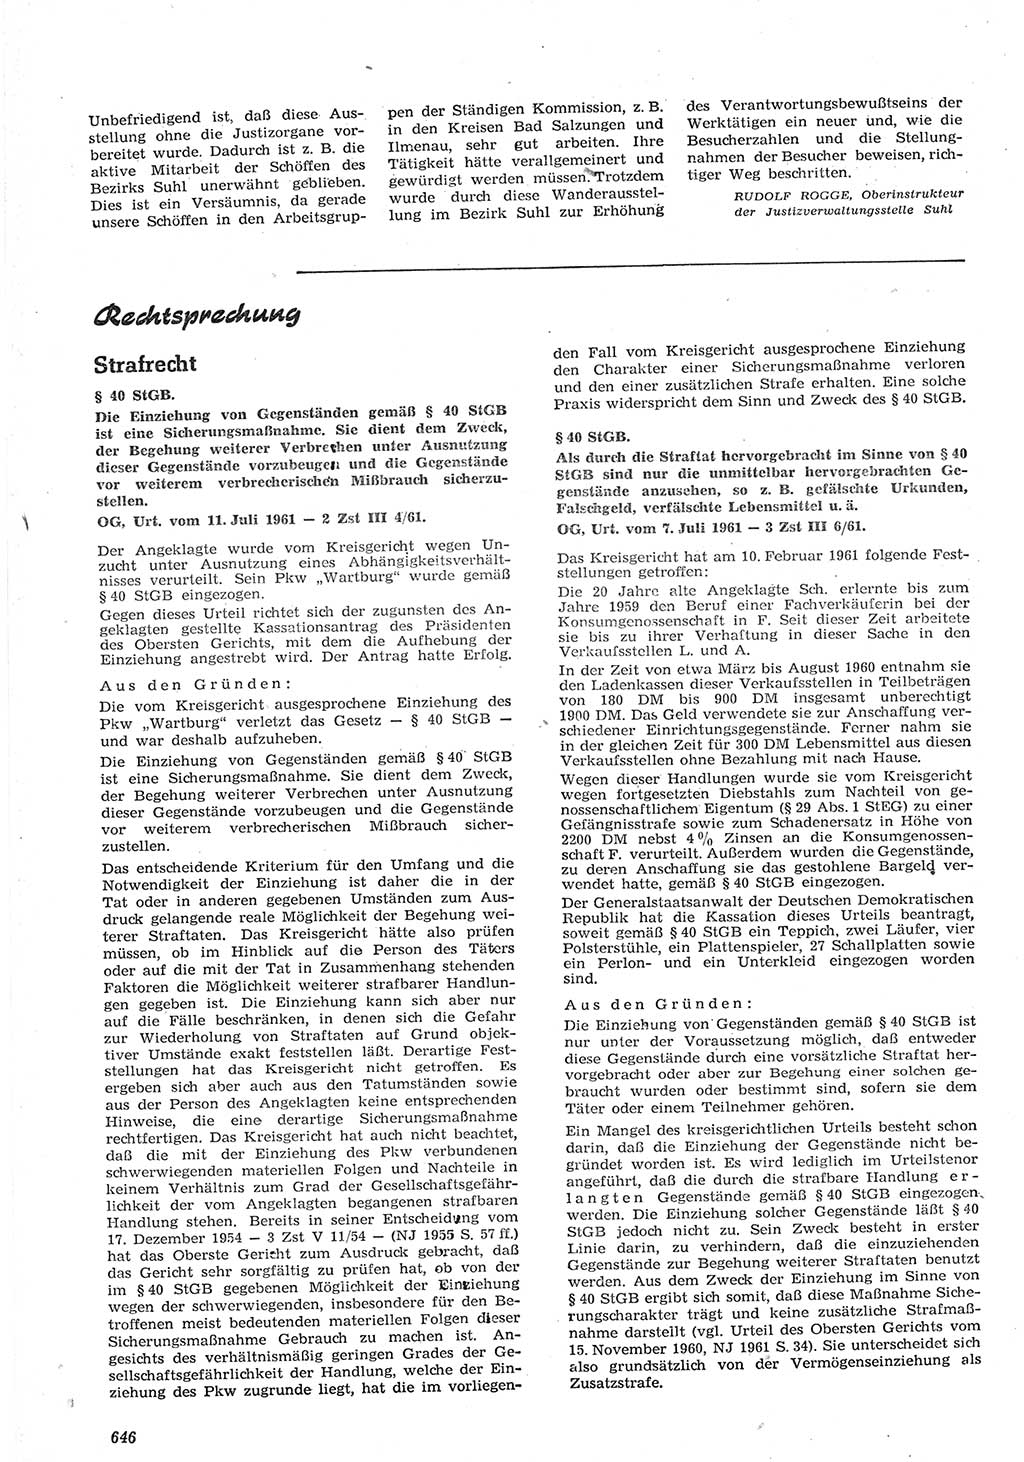 Neue Justiz (NJ), Zeitschrift für Recht und Rechtswissenschaft [Deutsche Demokratische Republik (DDR)], 15. Jahrgang 1961, Seite 646 (NJ DDR 1961, S. 646)